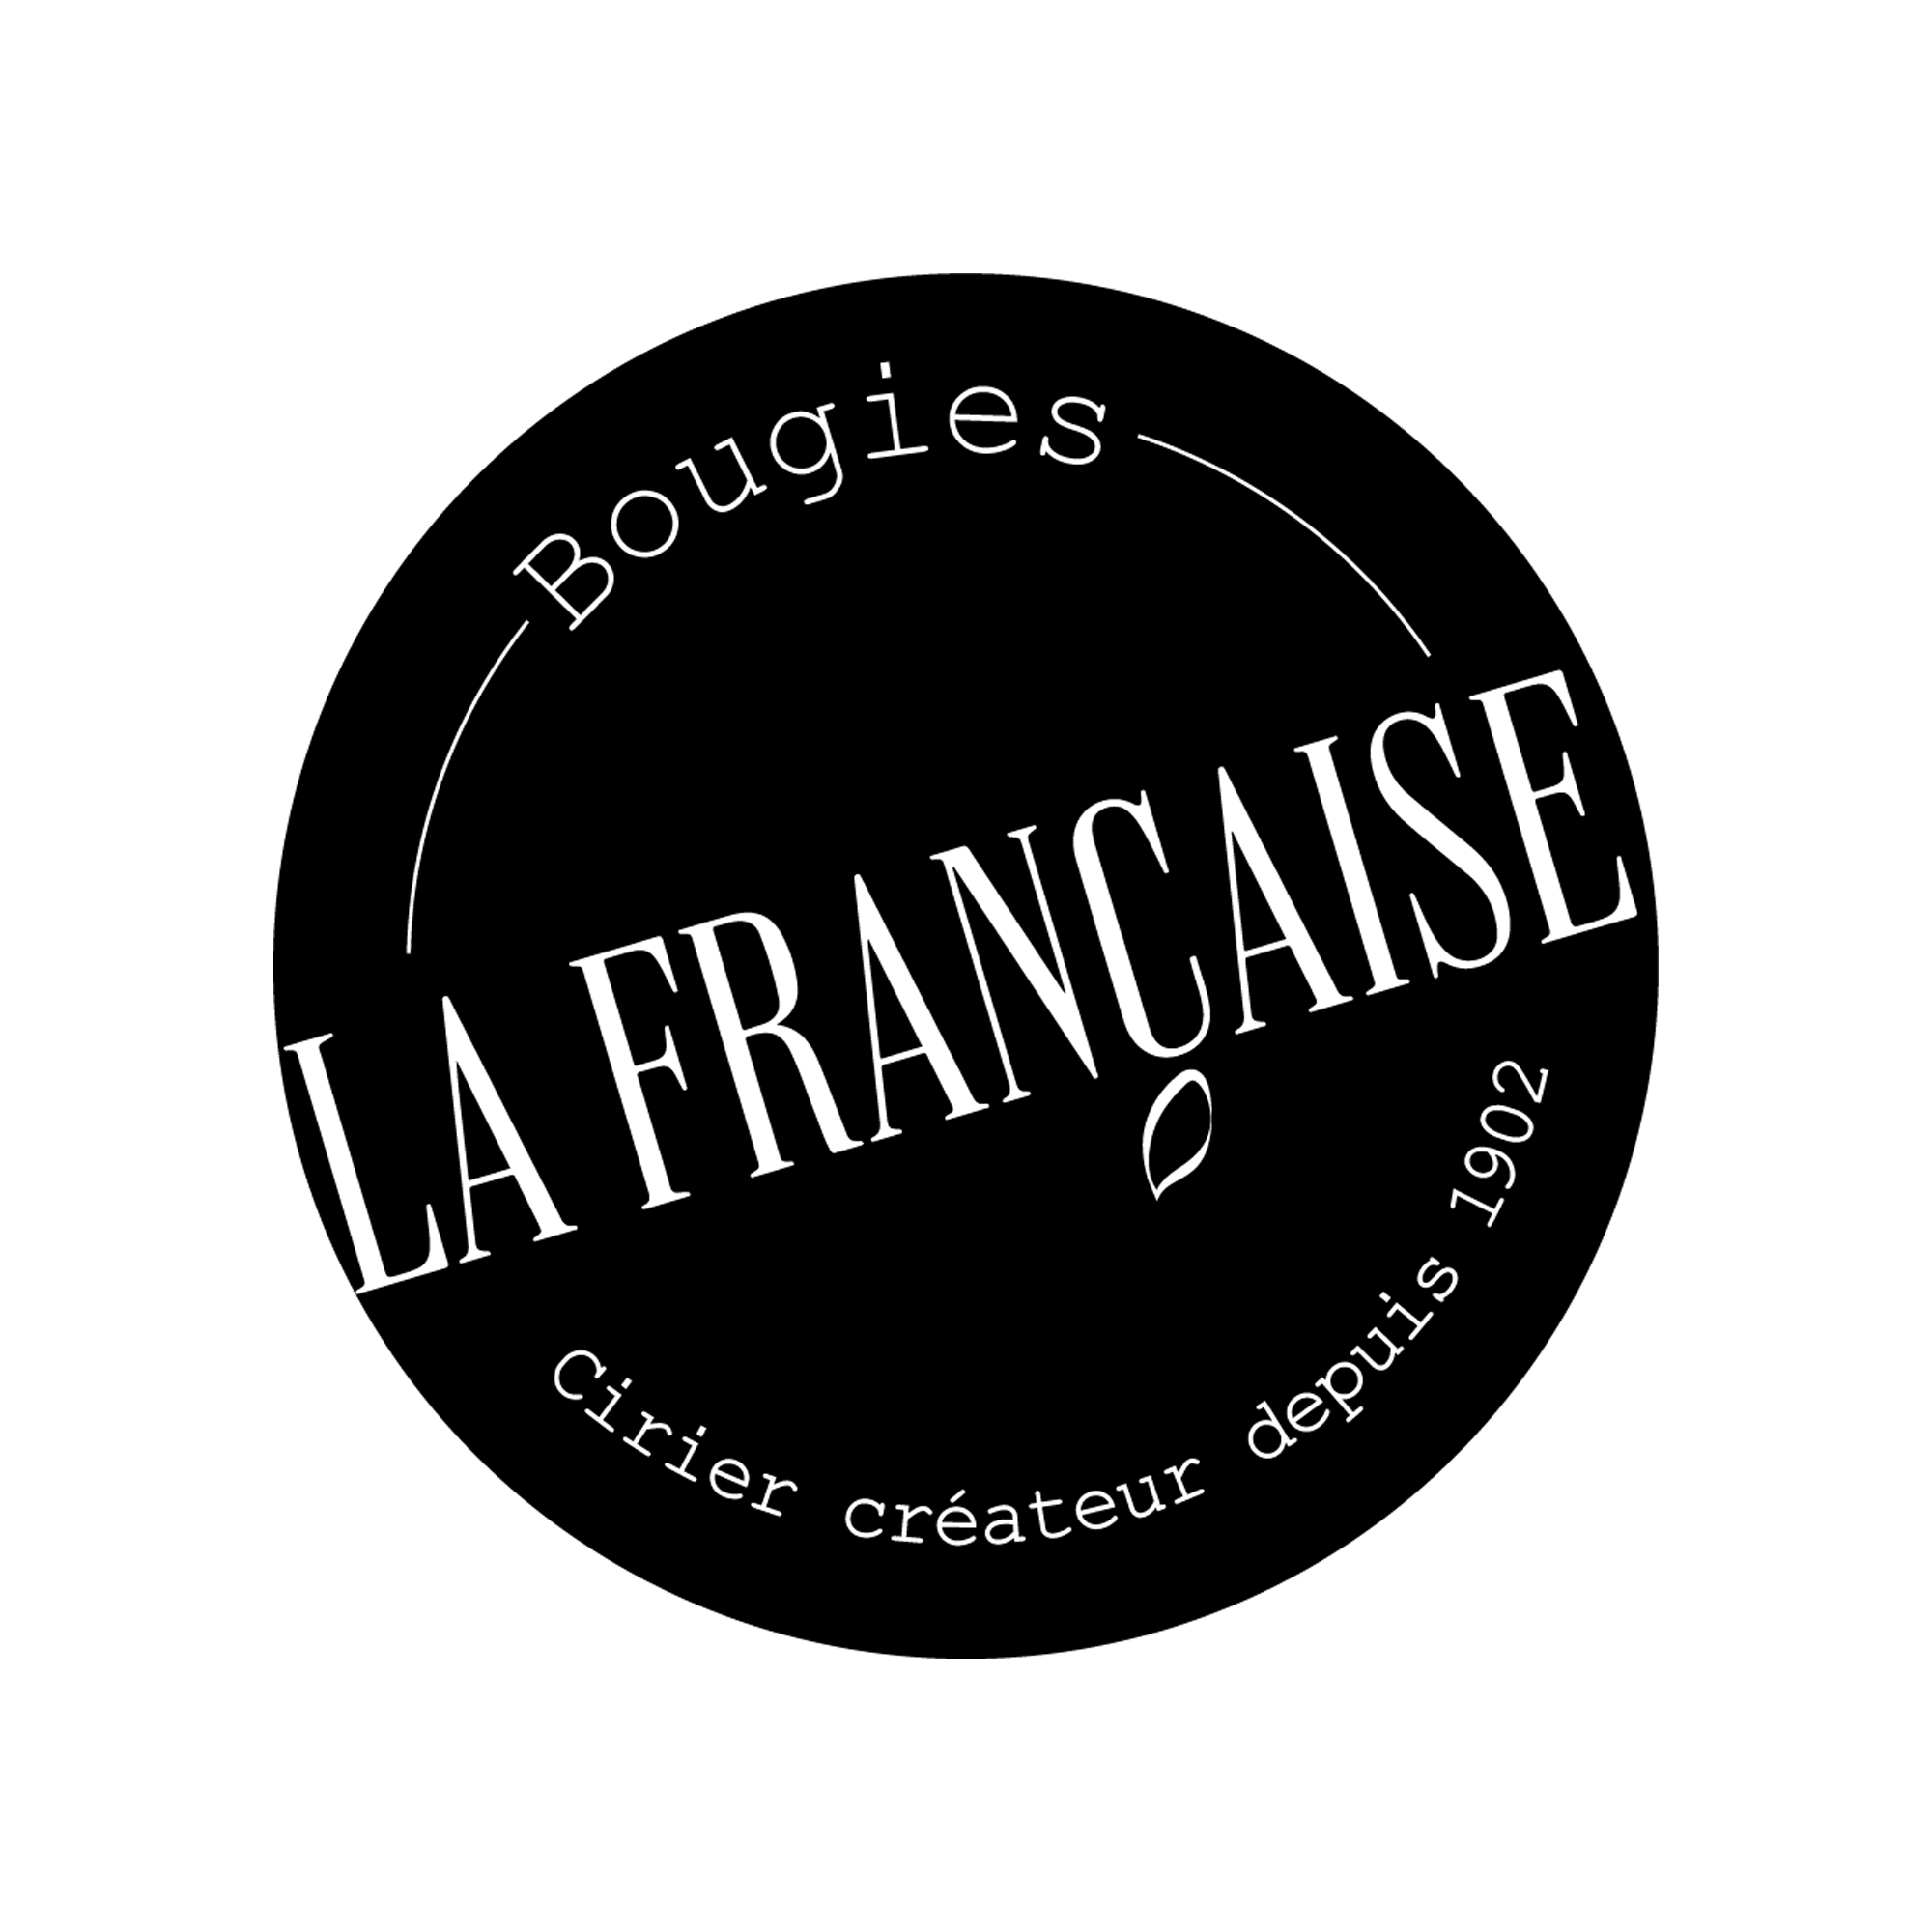 Bougies La Francaise 